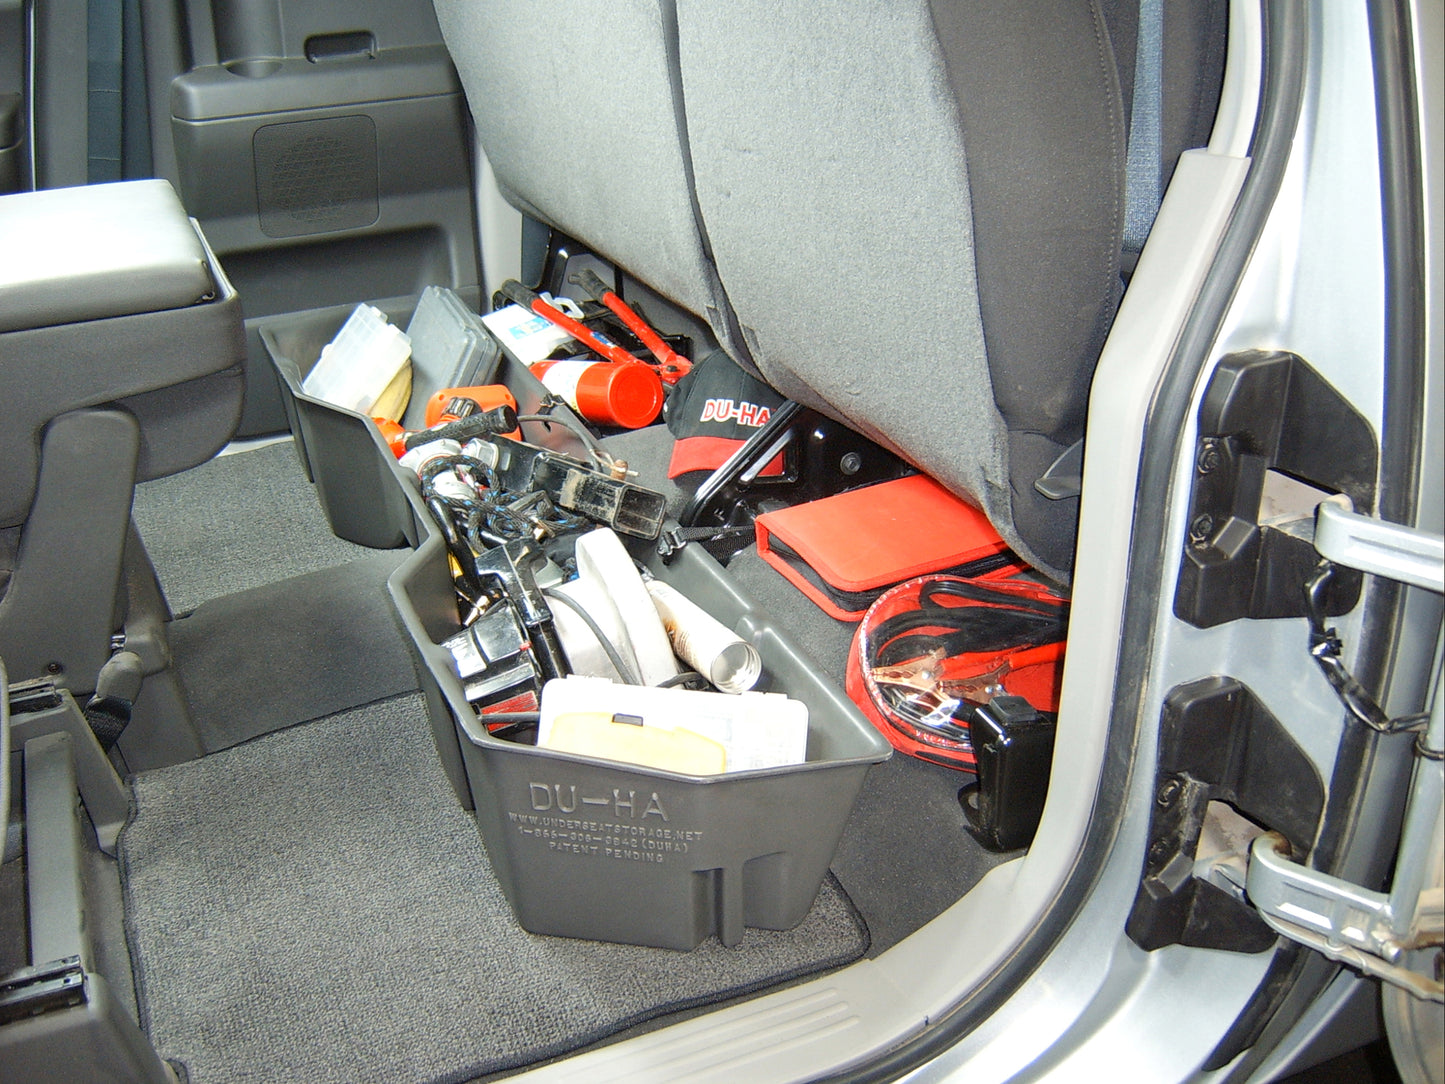 DU-HA 40011 Nissan Underseat Storage Console Organizer And Gun Case - Dark Gray